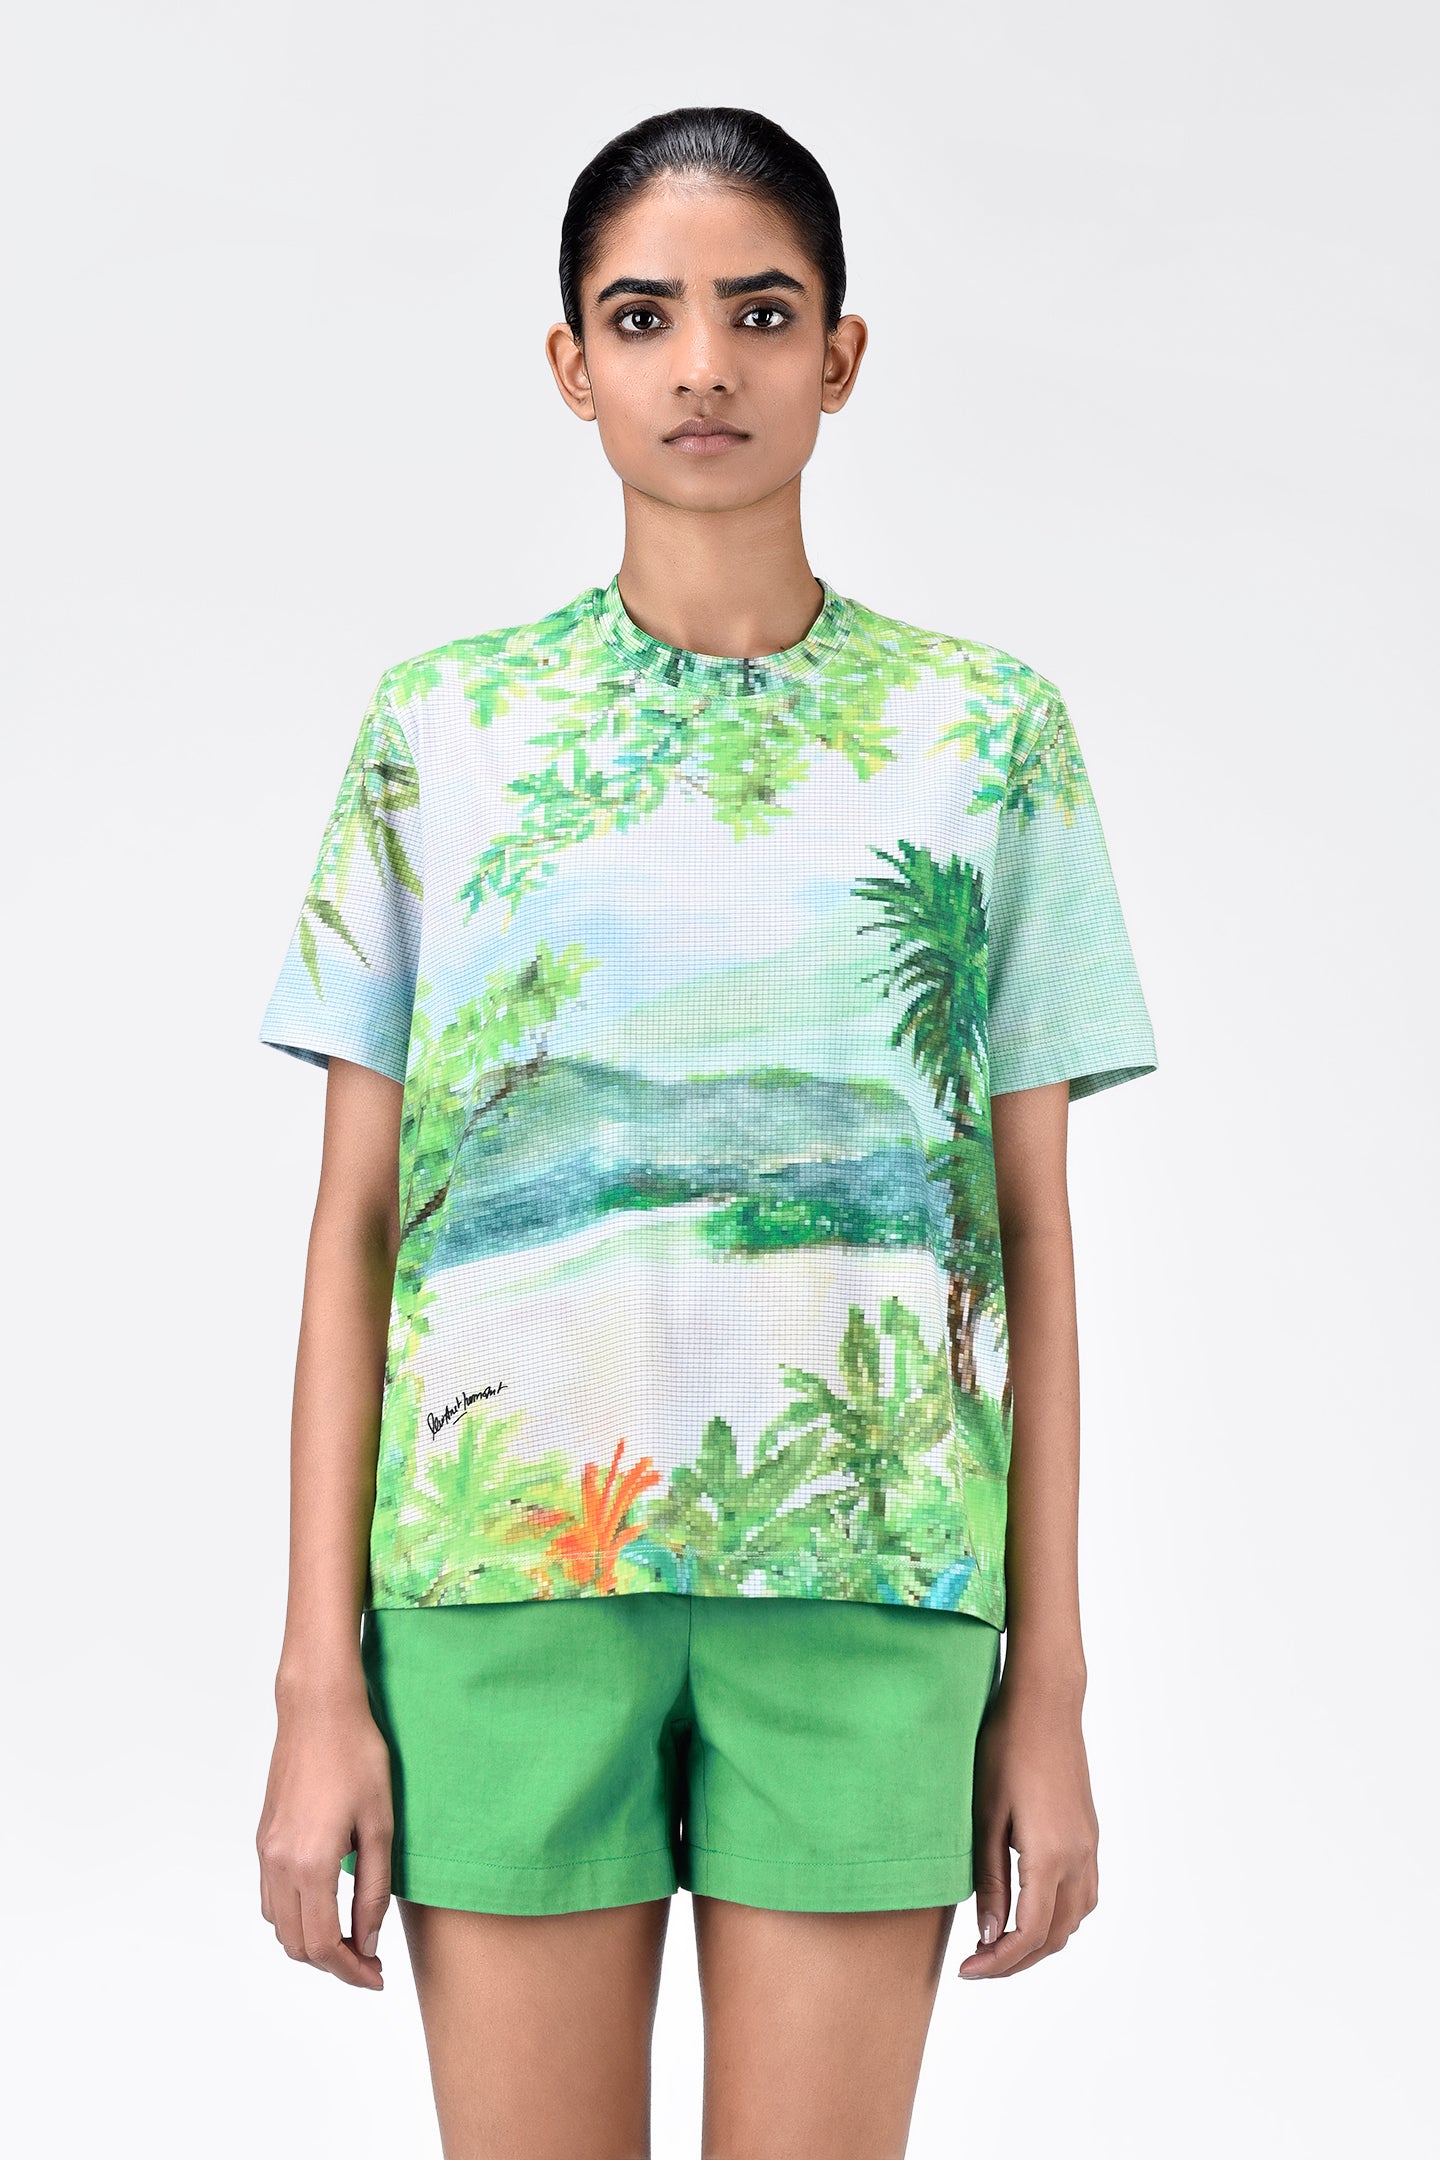 Pixelated Landscape Print Cotton T-Shirt